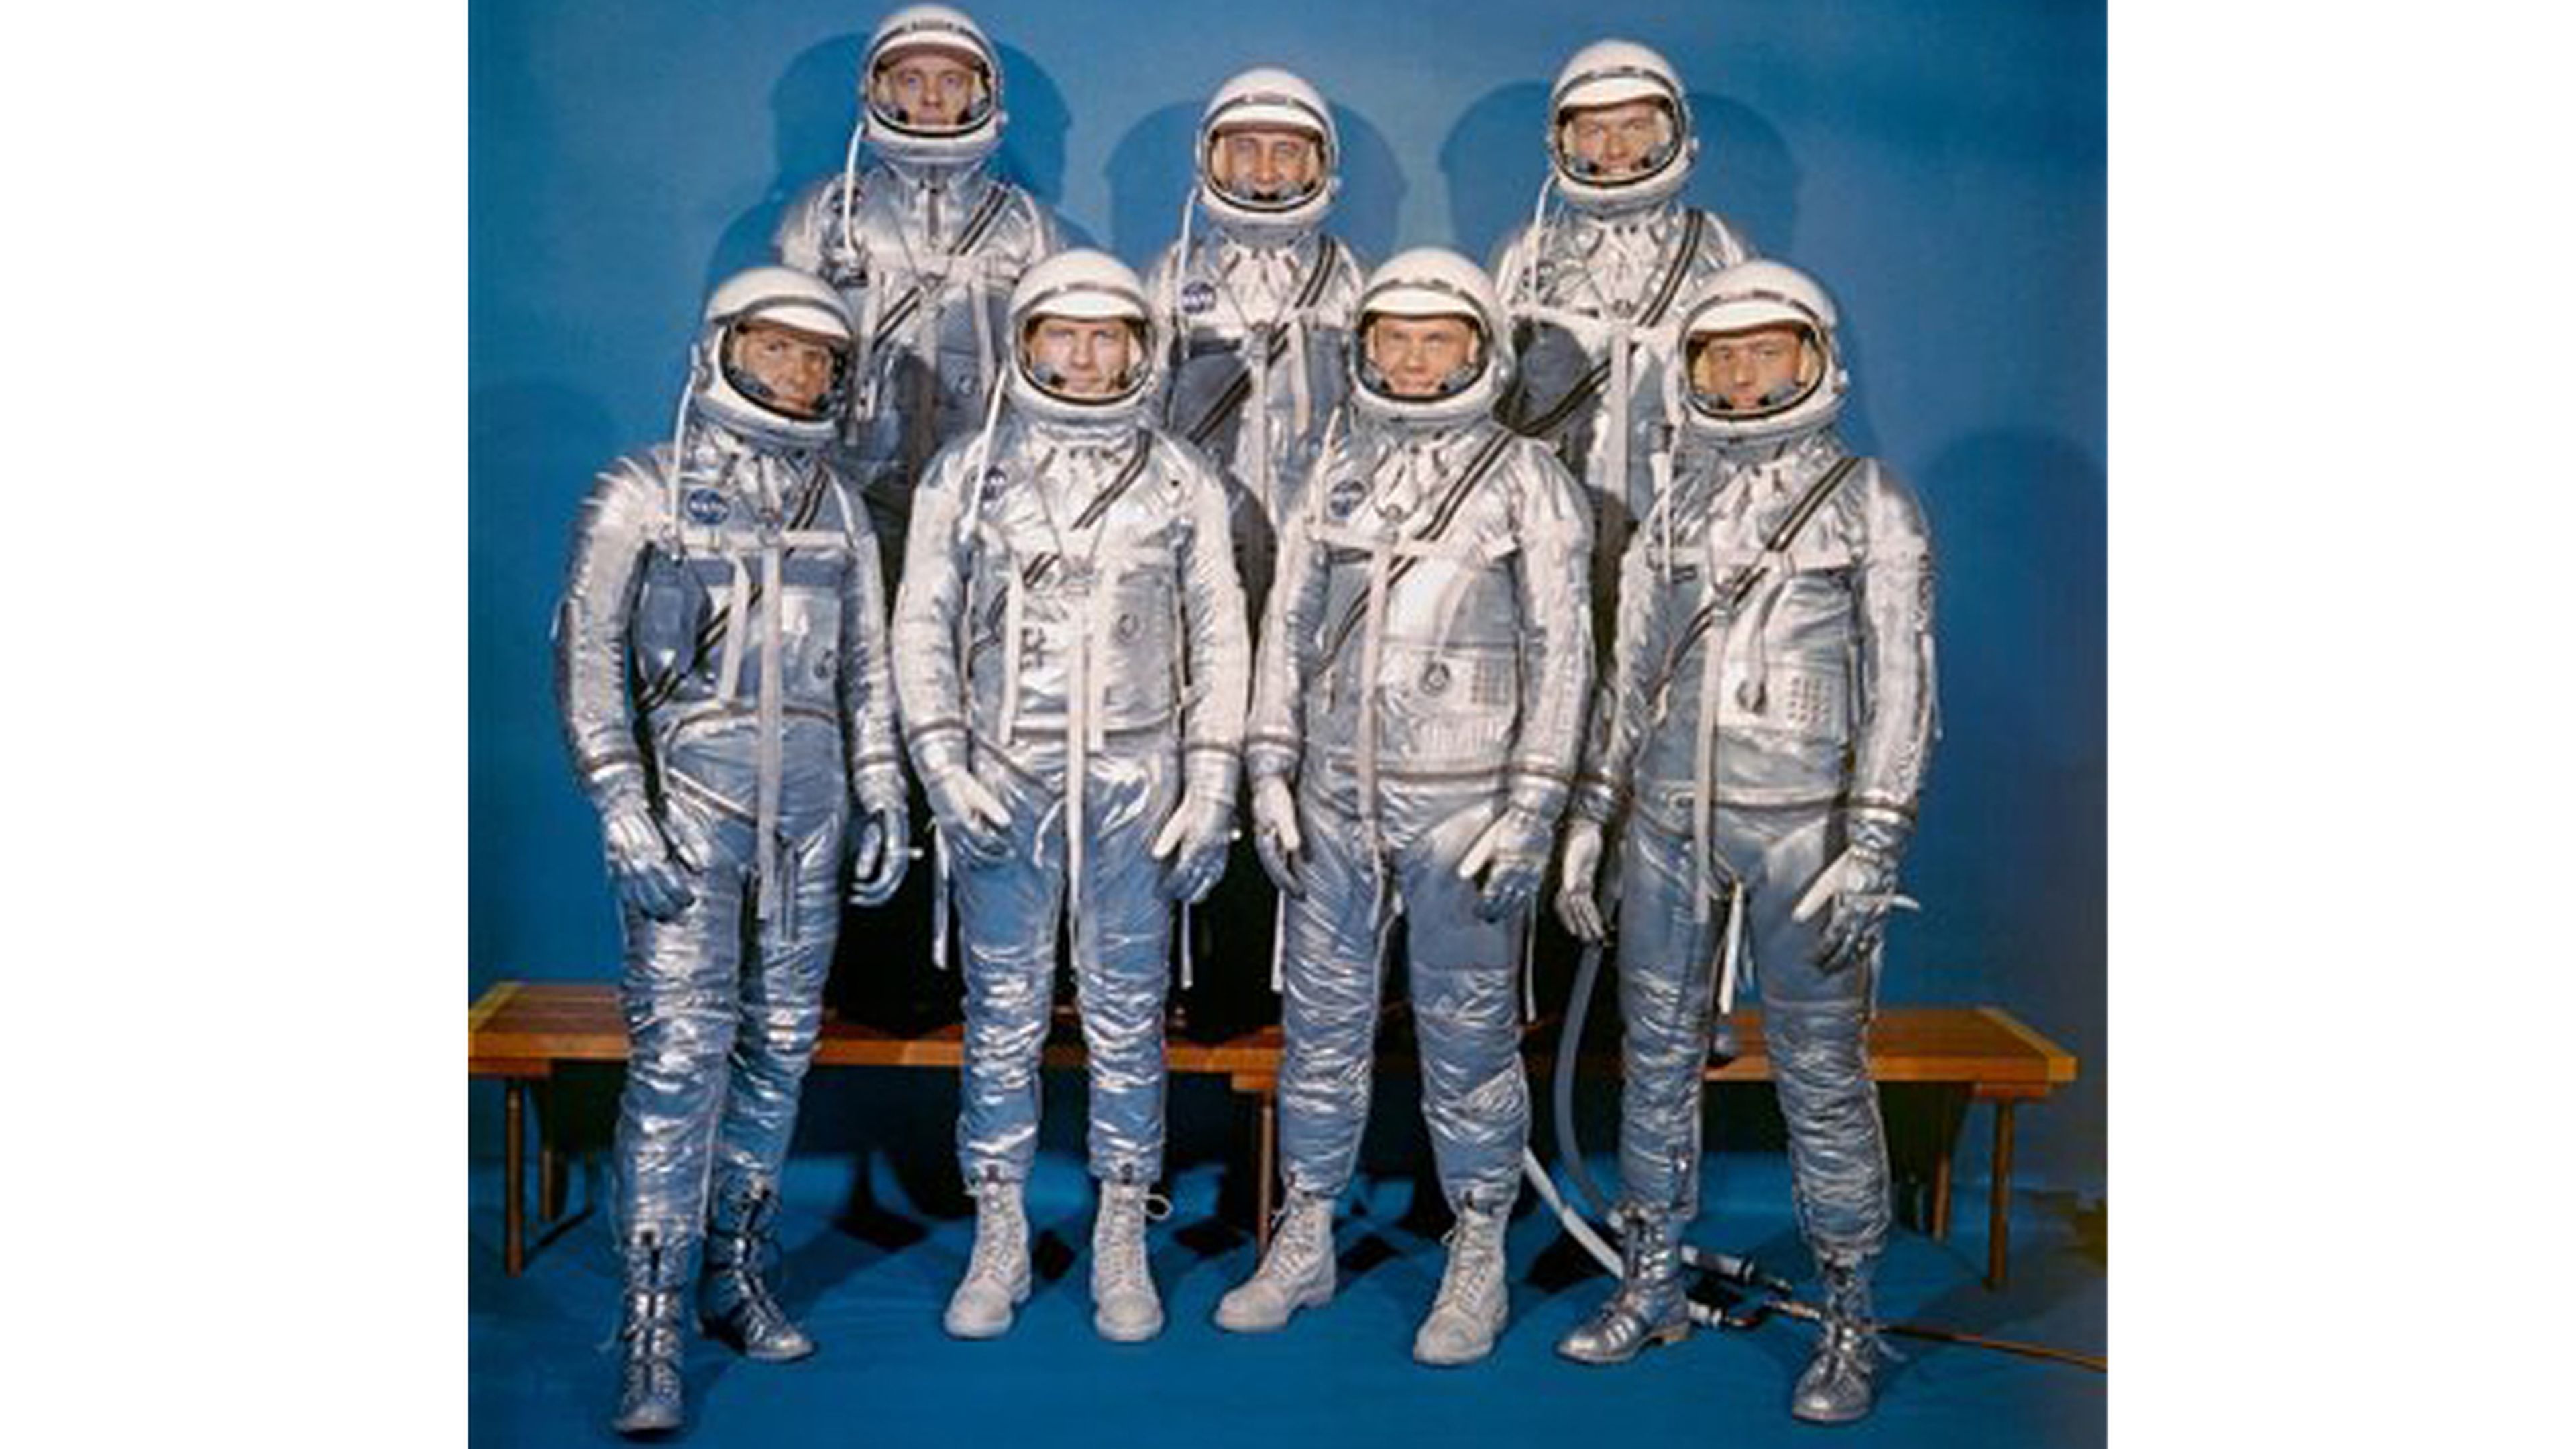 Primera expedición al espacio 1959